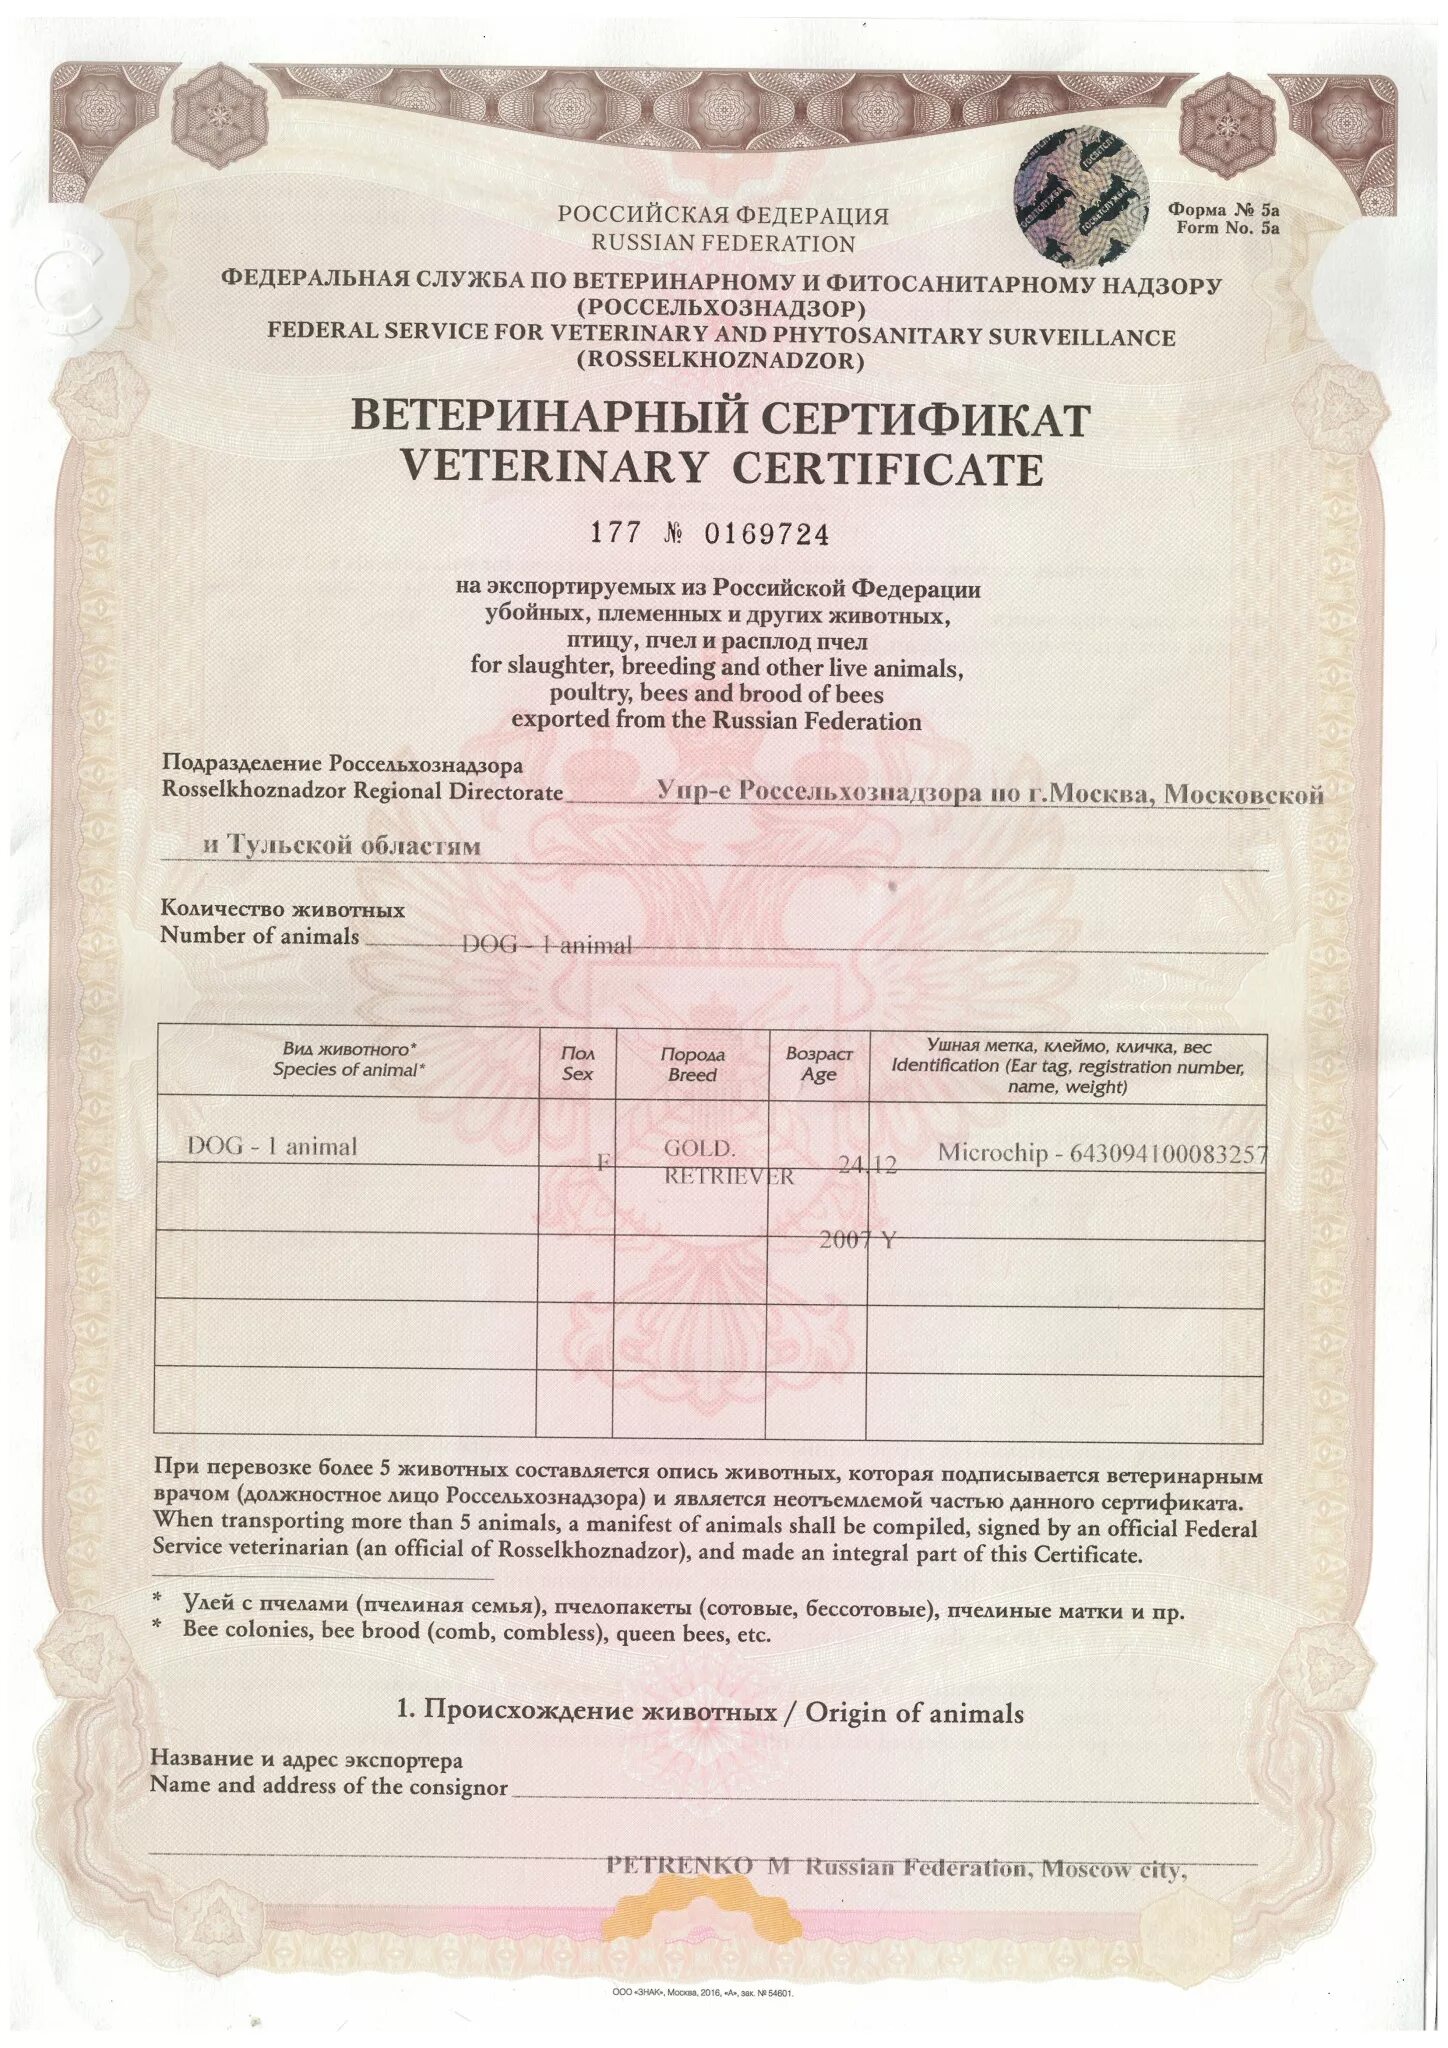 Ветеринарный сертификат форма 5ф. Ветеринарные сертификаты Россельхознадзор. Международный ветеринарный сертификат формы 5а. Ветеринарный сертификат международного образца для собак. Ветеринарная сертификация